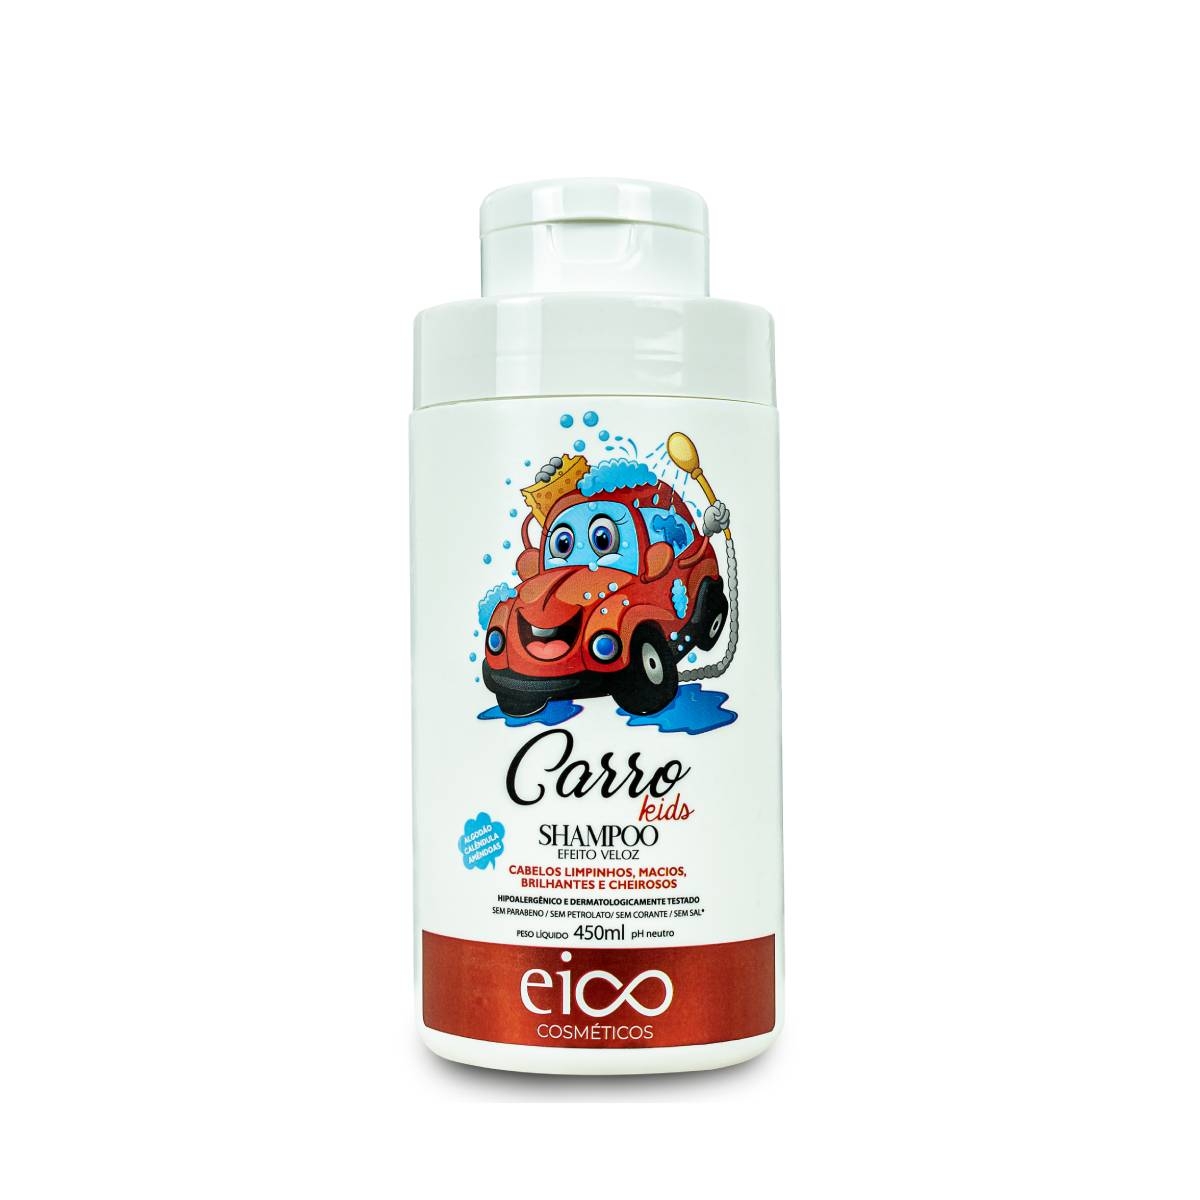 Shampoo Eico Carro Kids com 450ml 450ml